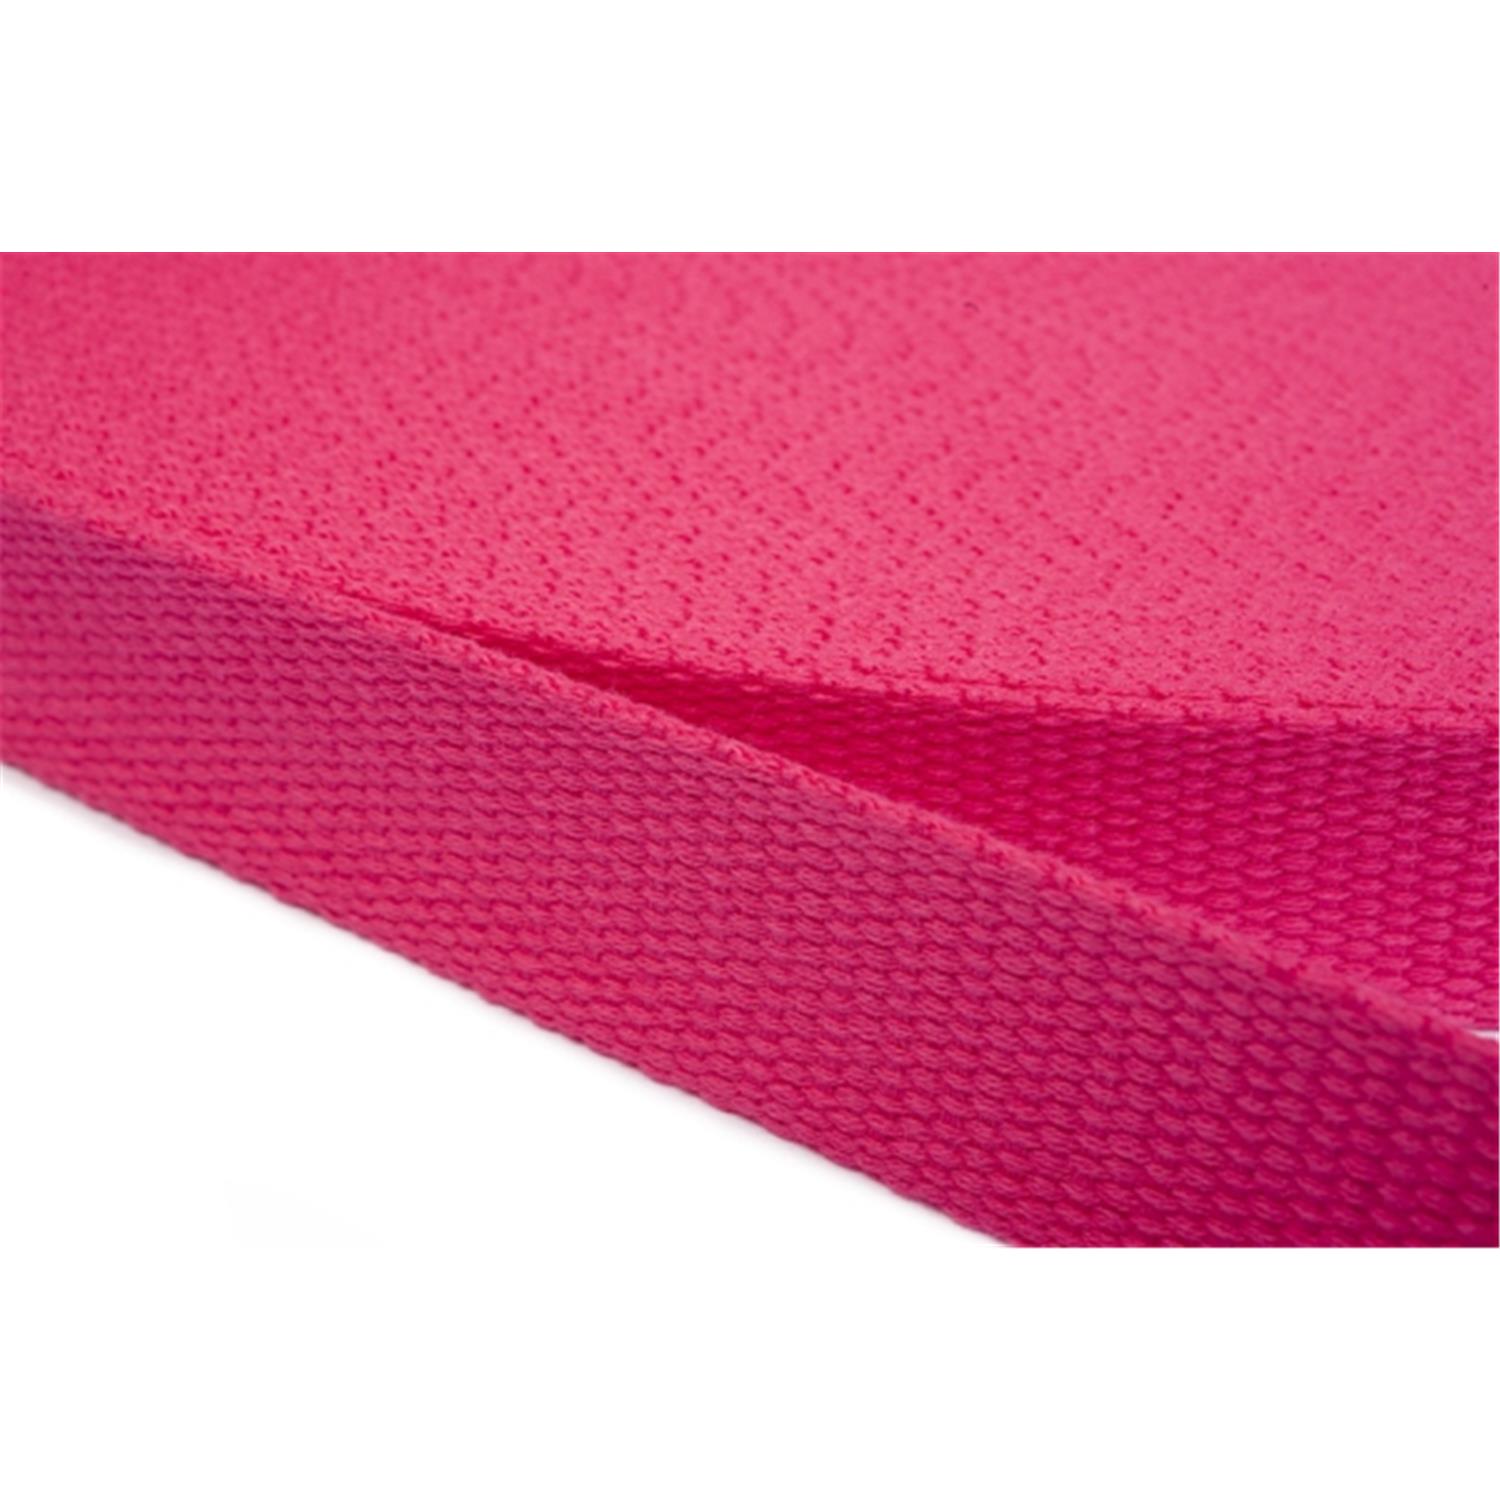 Gurtband aus Baumwolle 30mm in 20 Farben 07 - rosa/pink 6 Meter